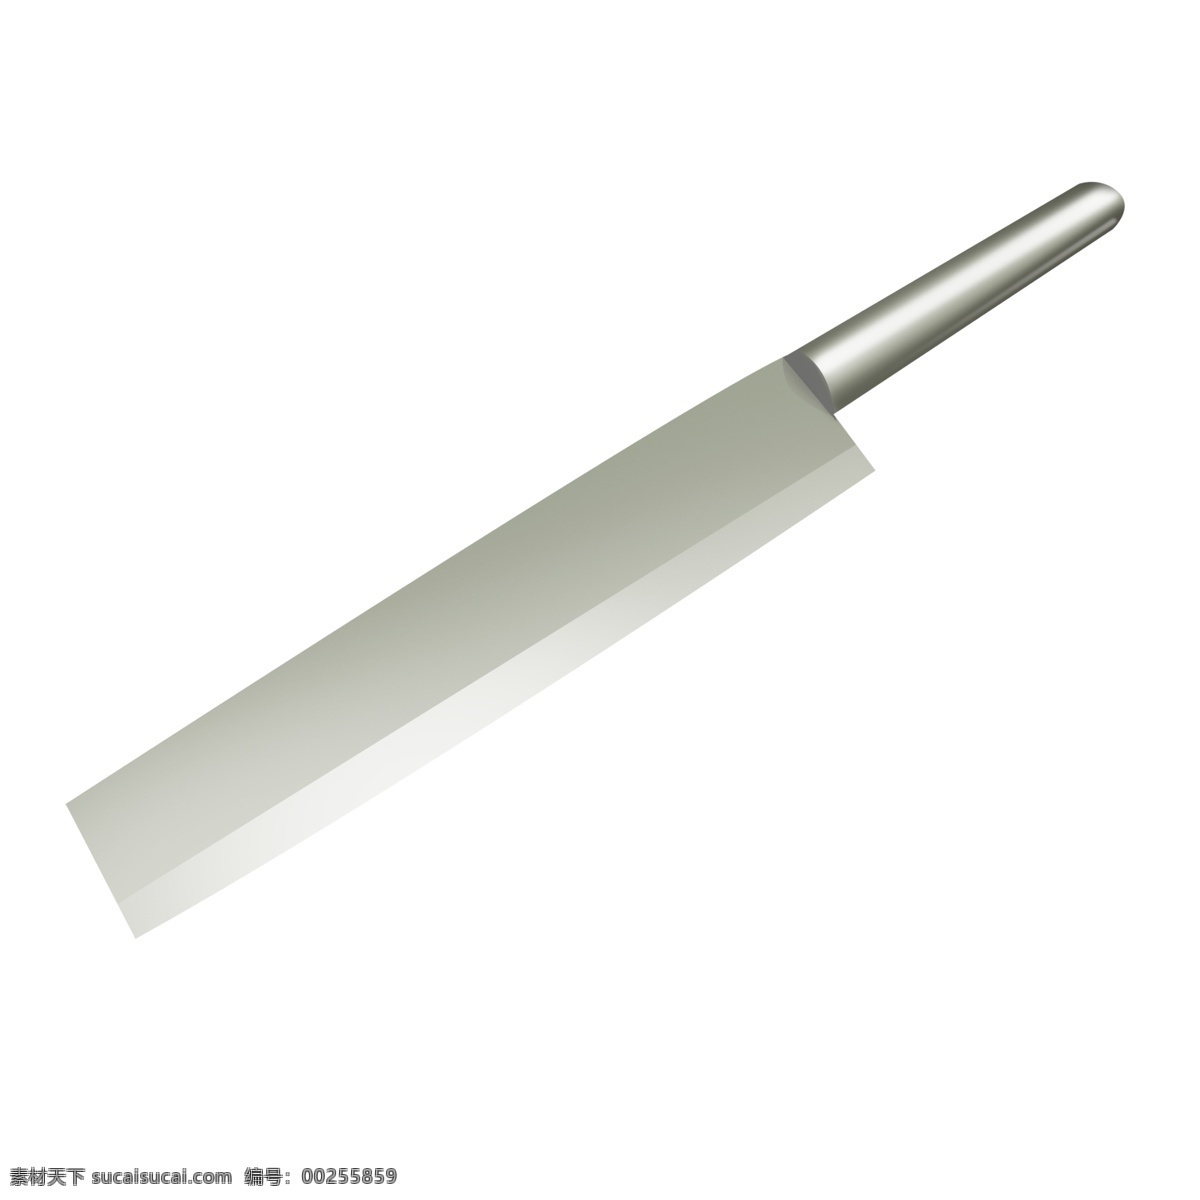 长条 银色 家用 菜刀 透明 底 灰色 厨具 插画插图 插画 锋利 锋利的刀